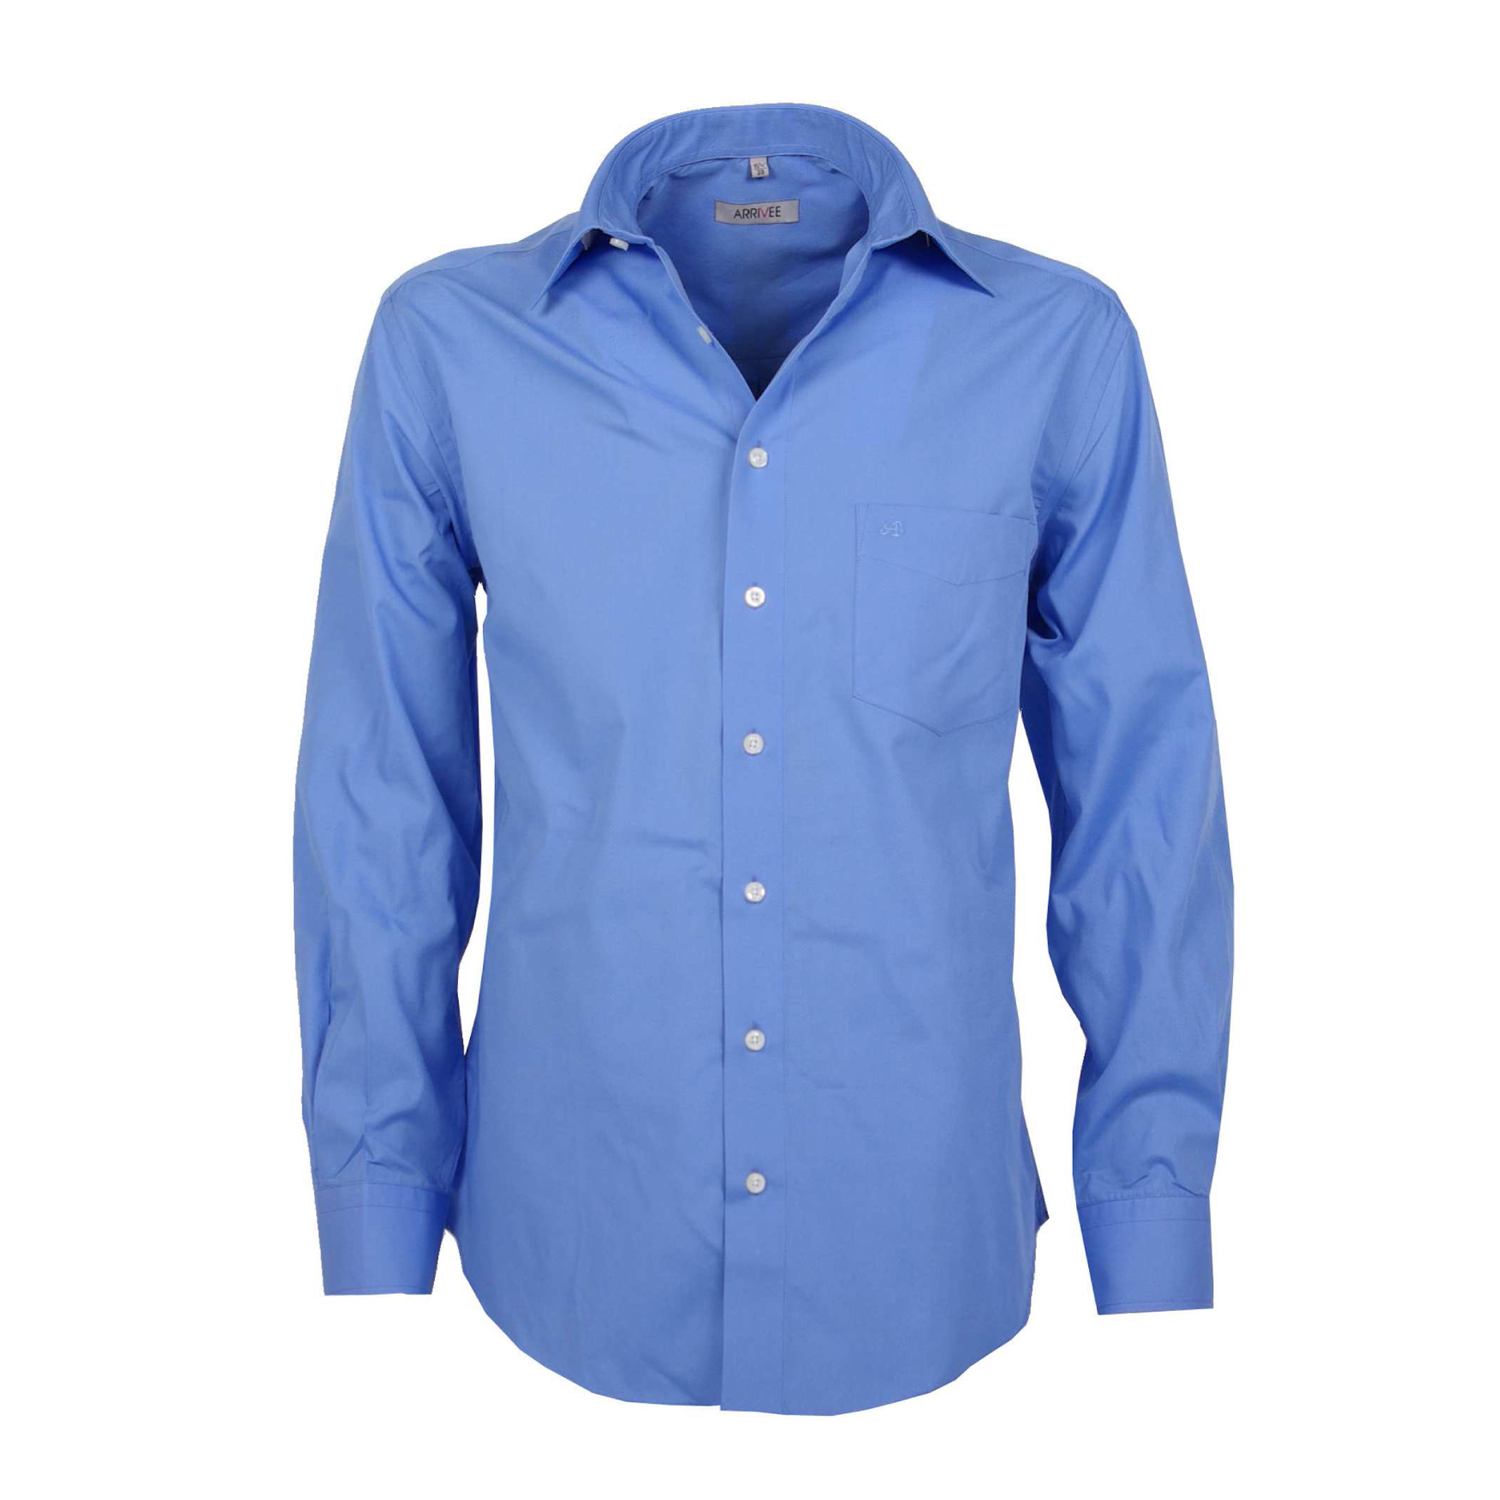 Chemise bleue by ARRIVEE dans les grandes tailles jusqu'au 8XL